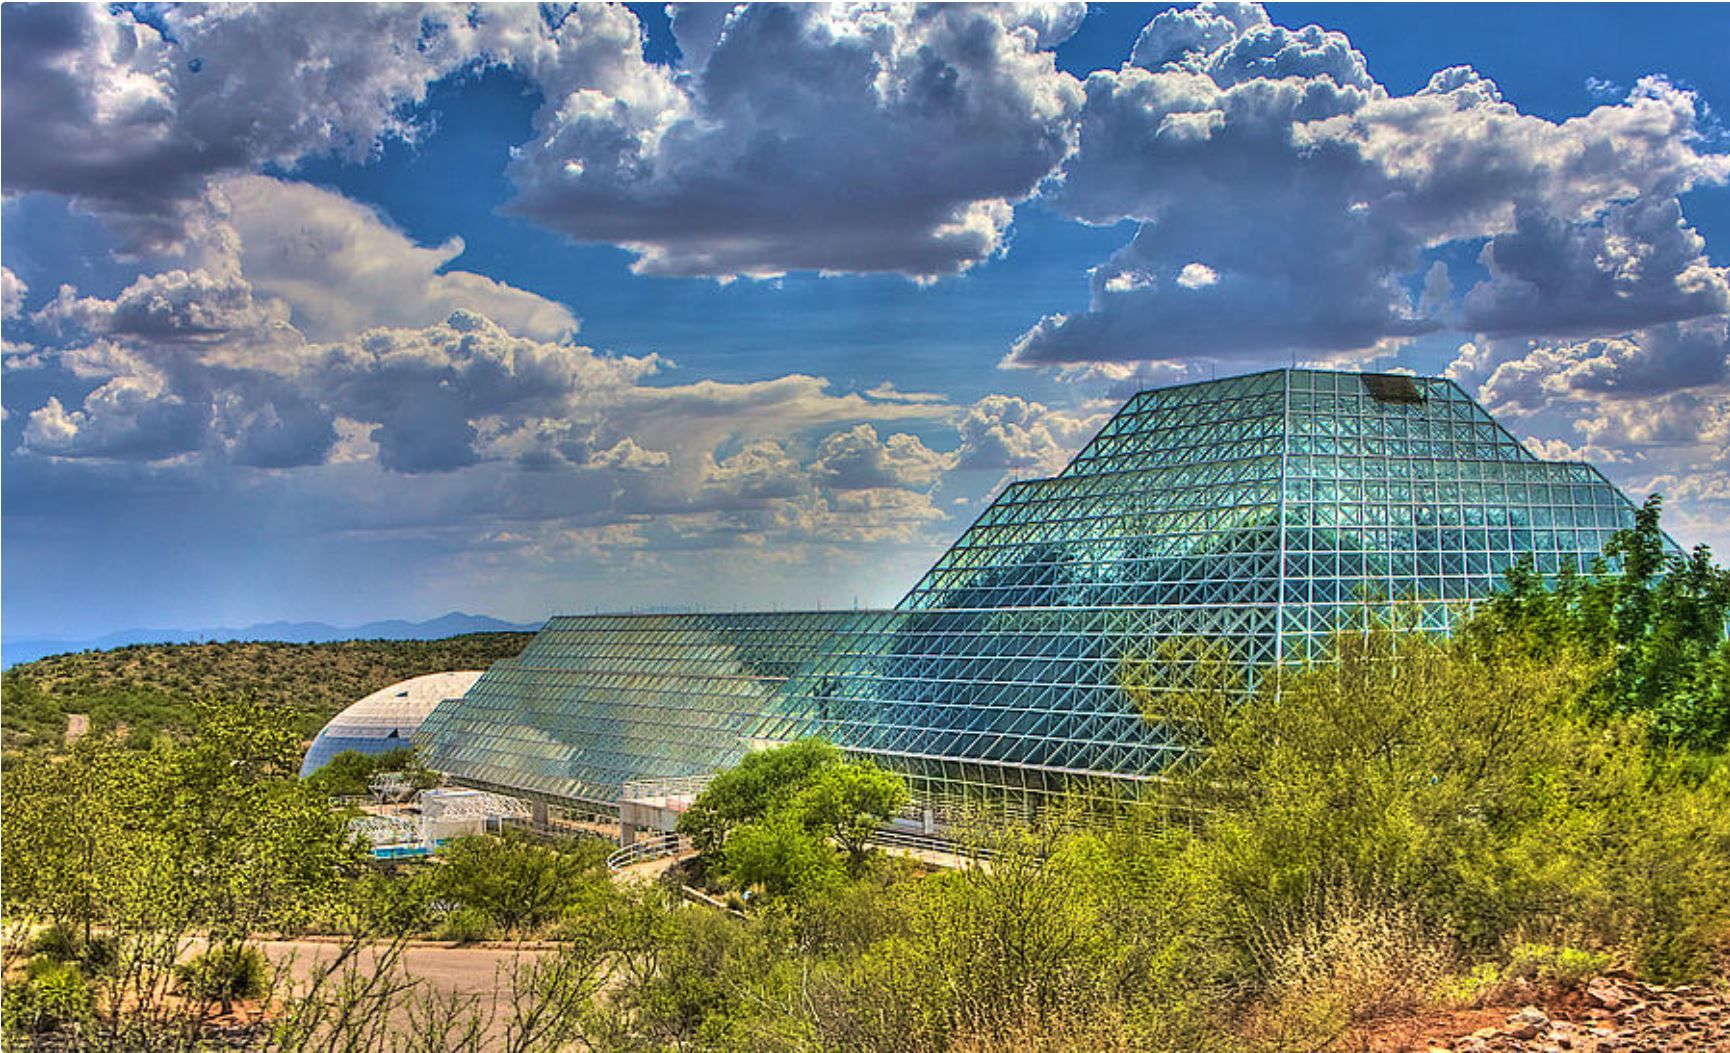 Biosphere 2 - William Wetmore